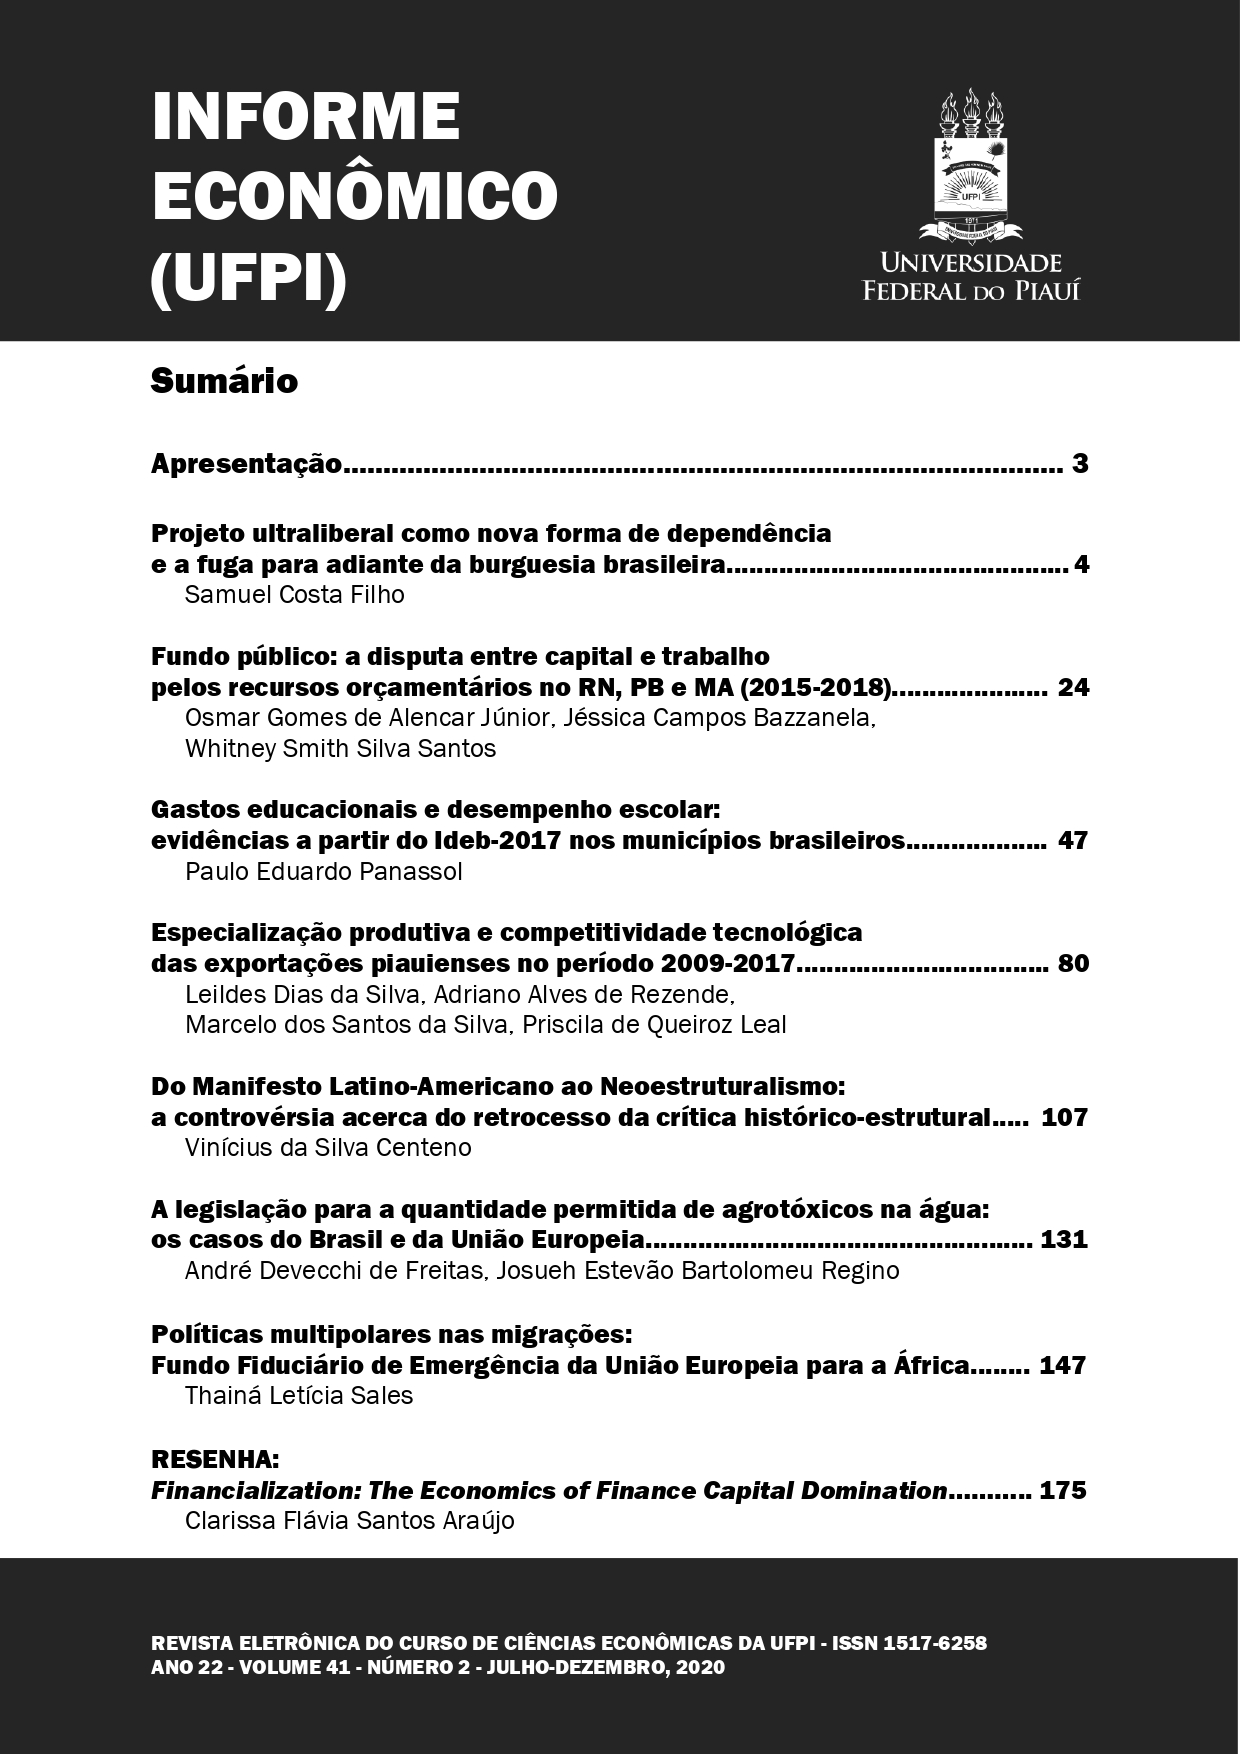 					View Vol. 41 No. 2 (2020): INFORME ECONÔMICO (UFPI), Ano 22, Julho-Dezembro
				